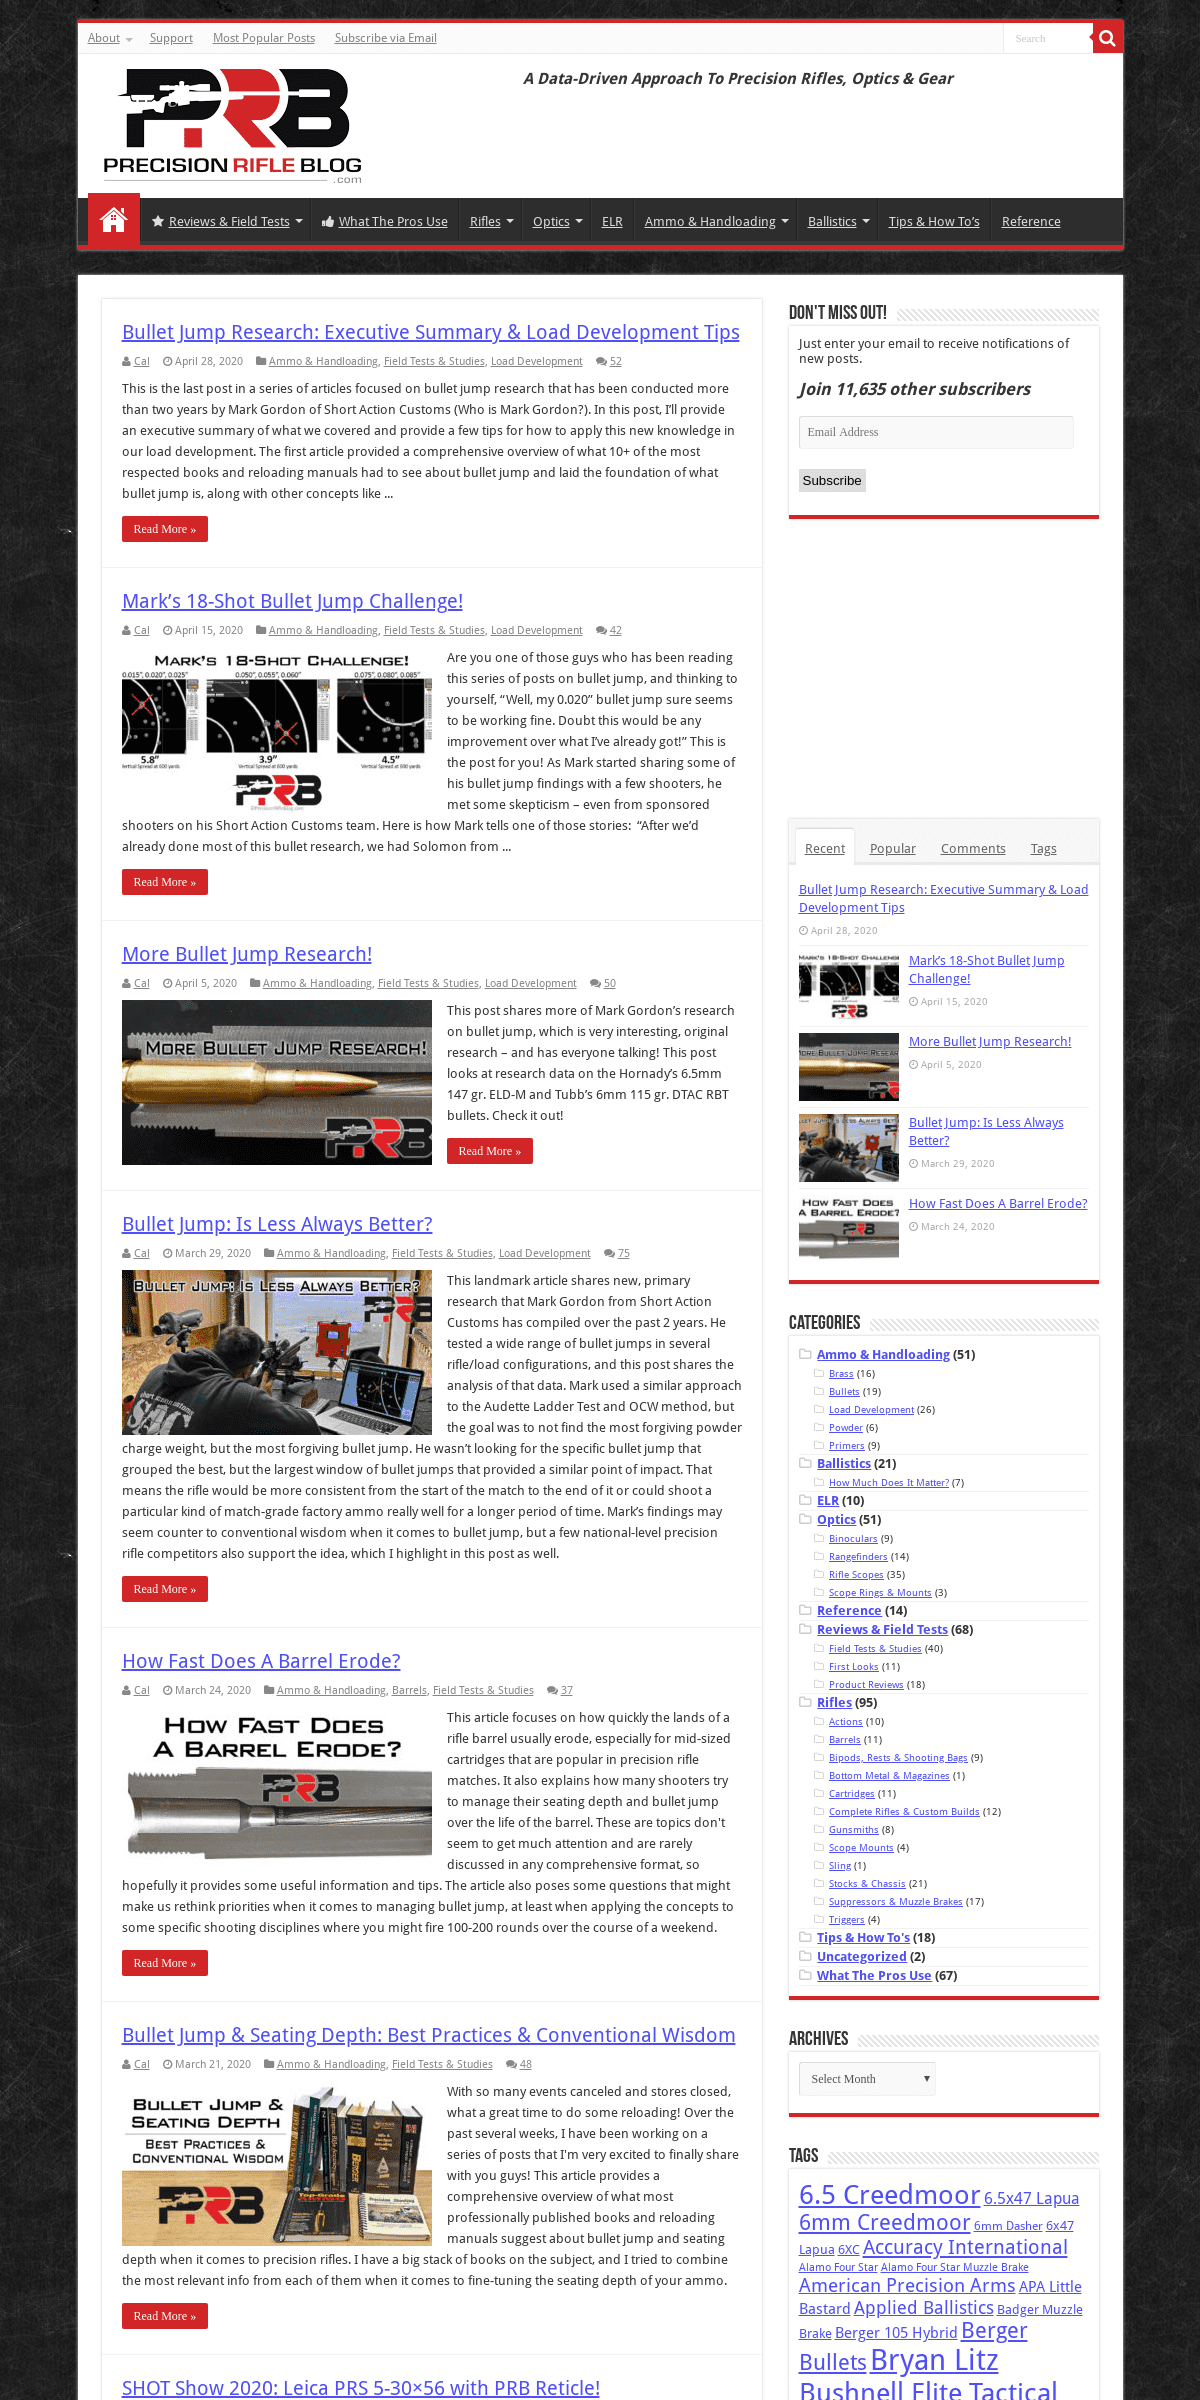 A complete backup of precisionrifleblog.com